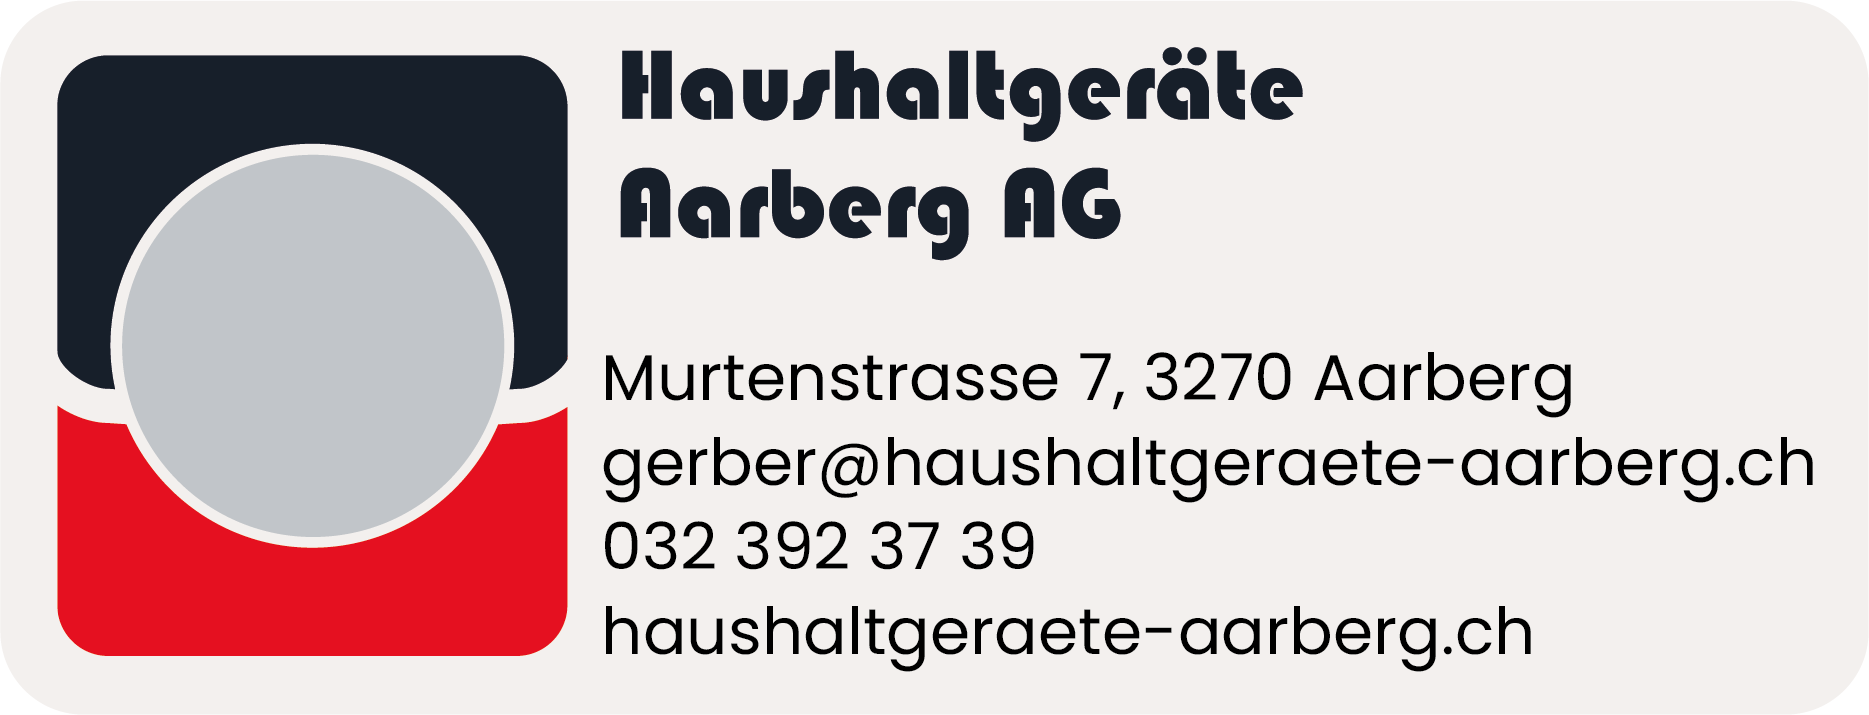 Haushaltgeräte Aarberg AG